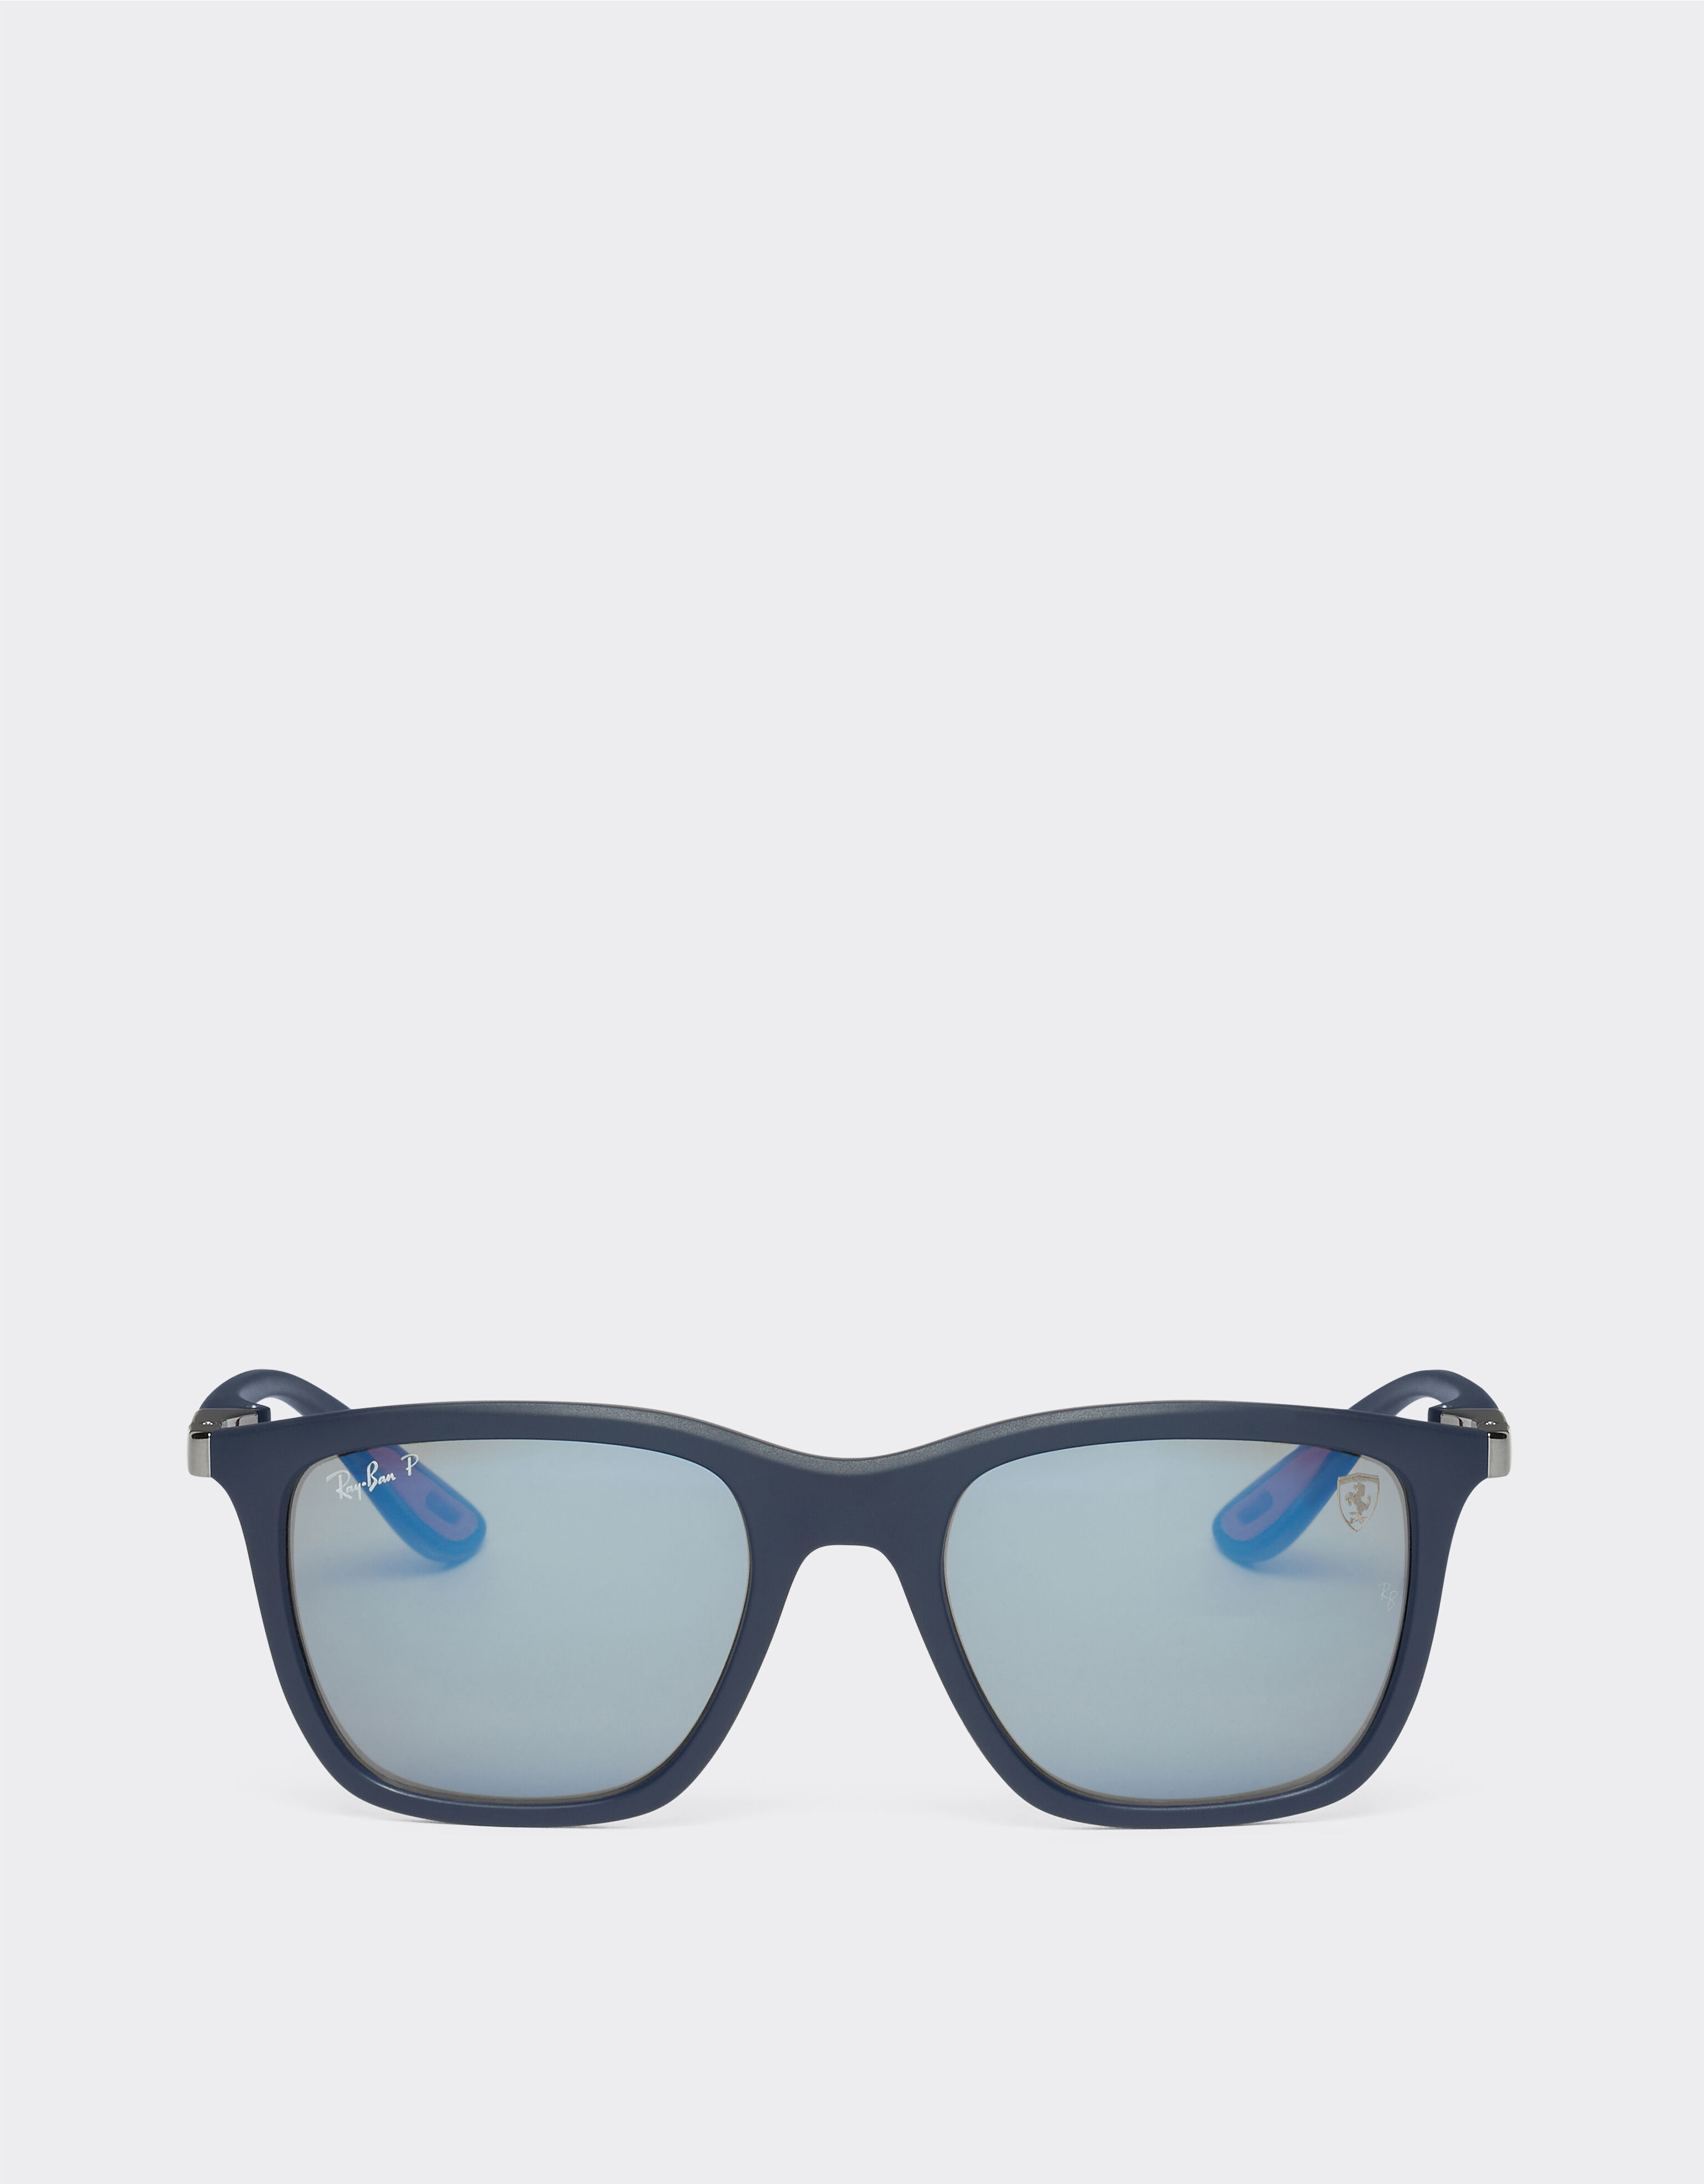 Ferrari Ray-Ban for Scuderia Ferrari 0RB4433M matt blue sunglasses with polarised mirror blue lenses Rosso Corsa F1133f